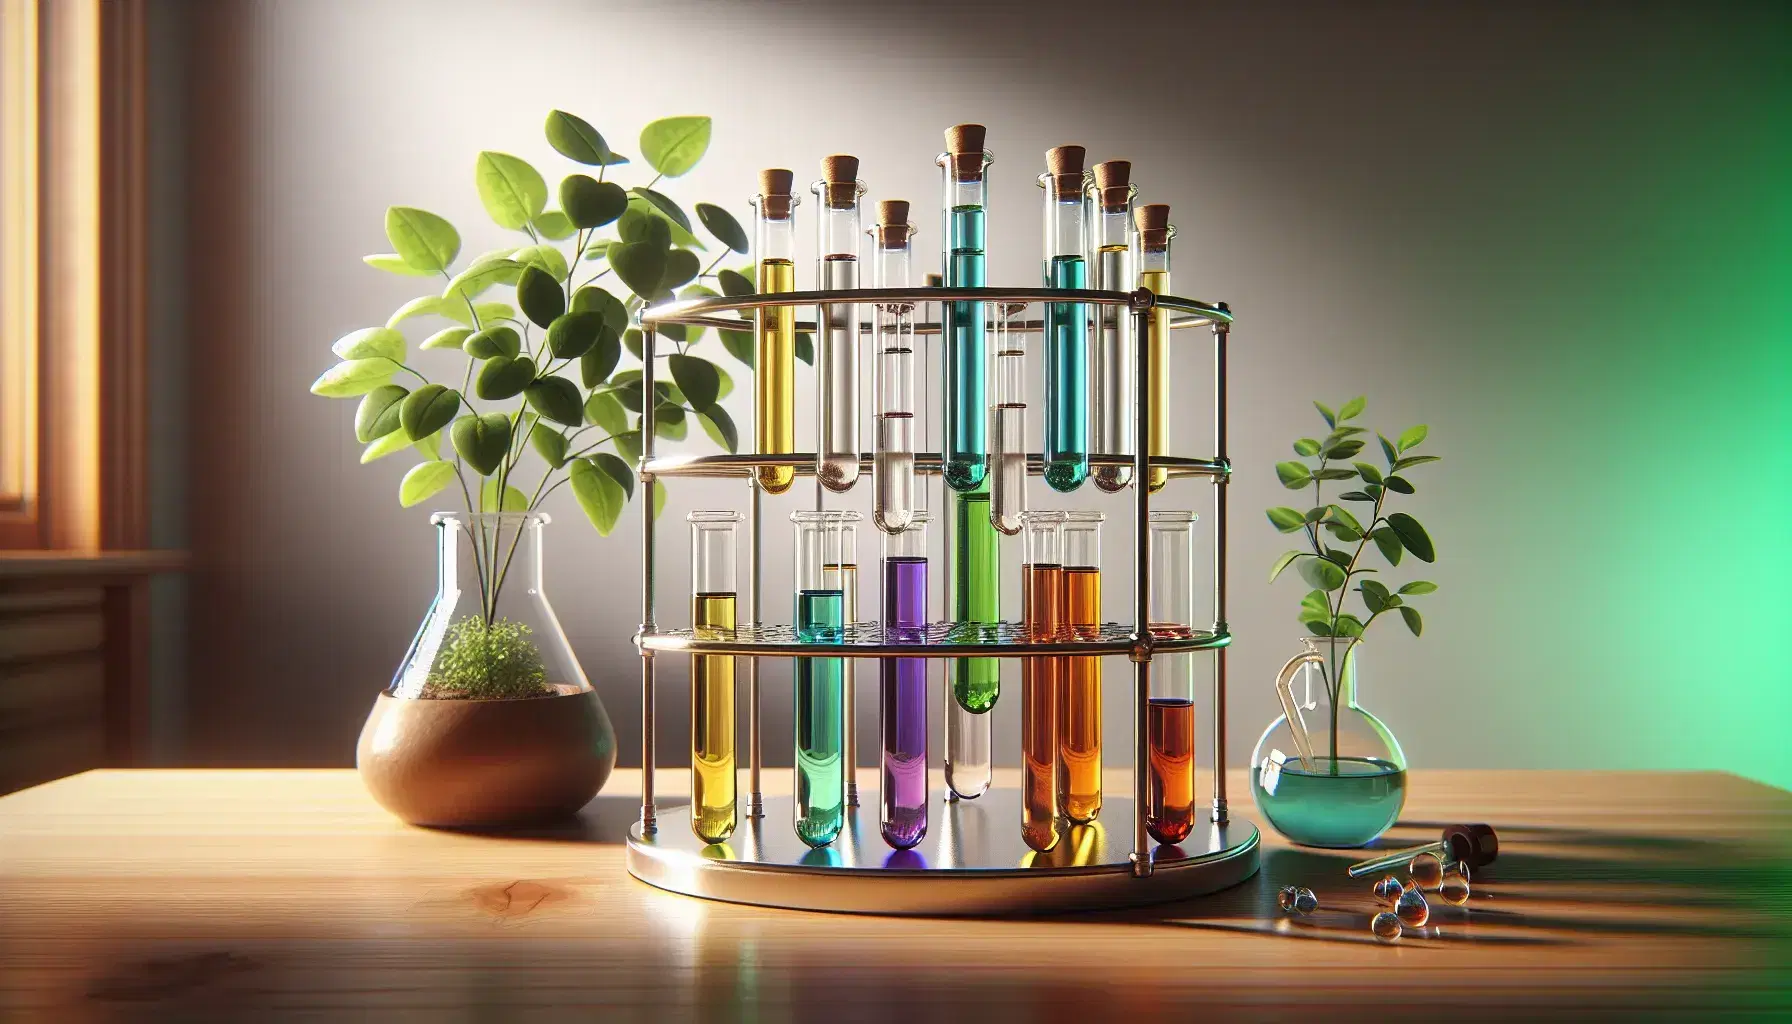 Tubos de ensayo con líquidos de colores variados en soporte metálico, planta con flores blancas al fondo y material de laboratorio sobre mesa clara.